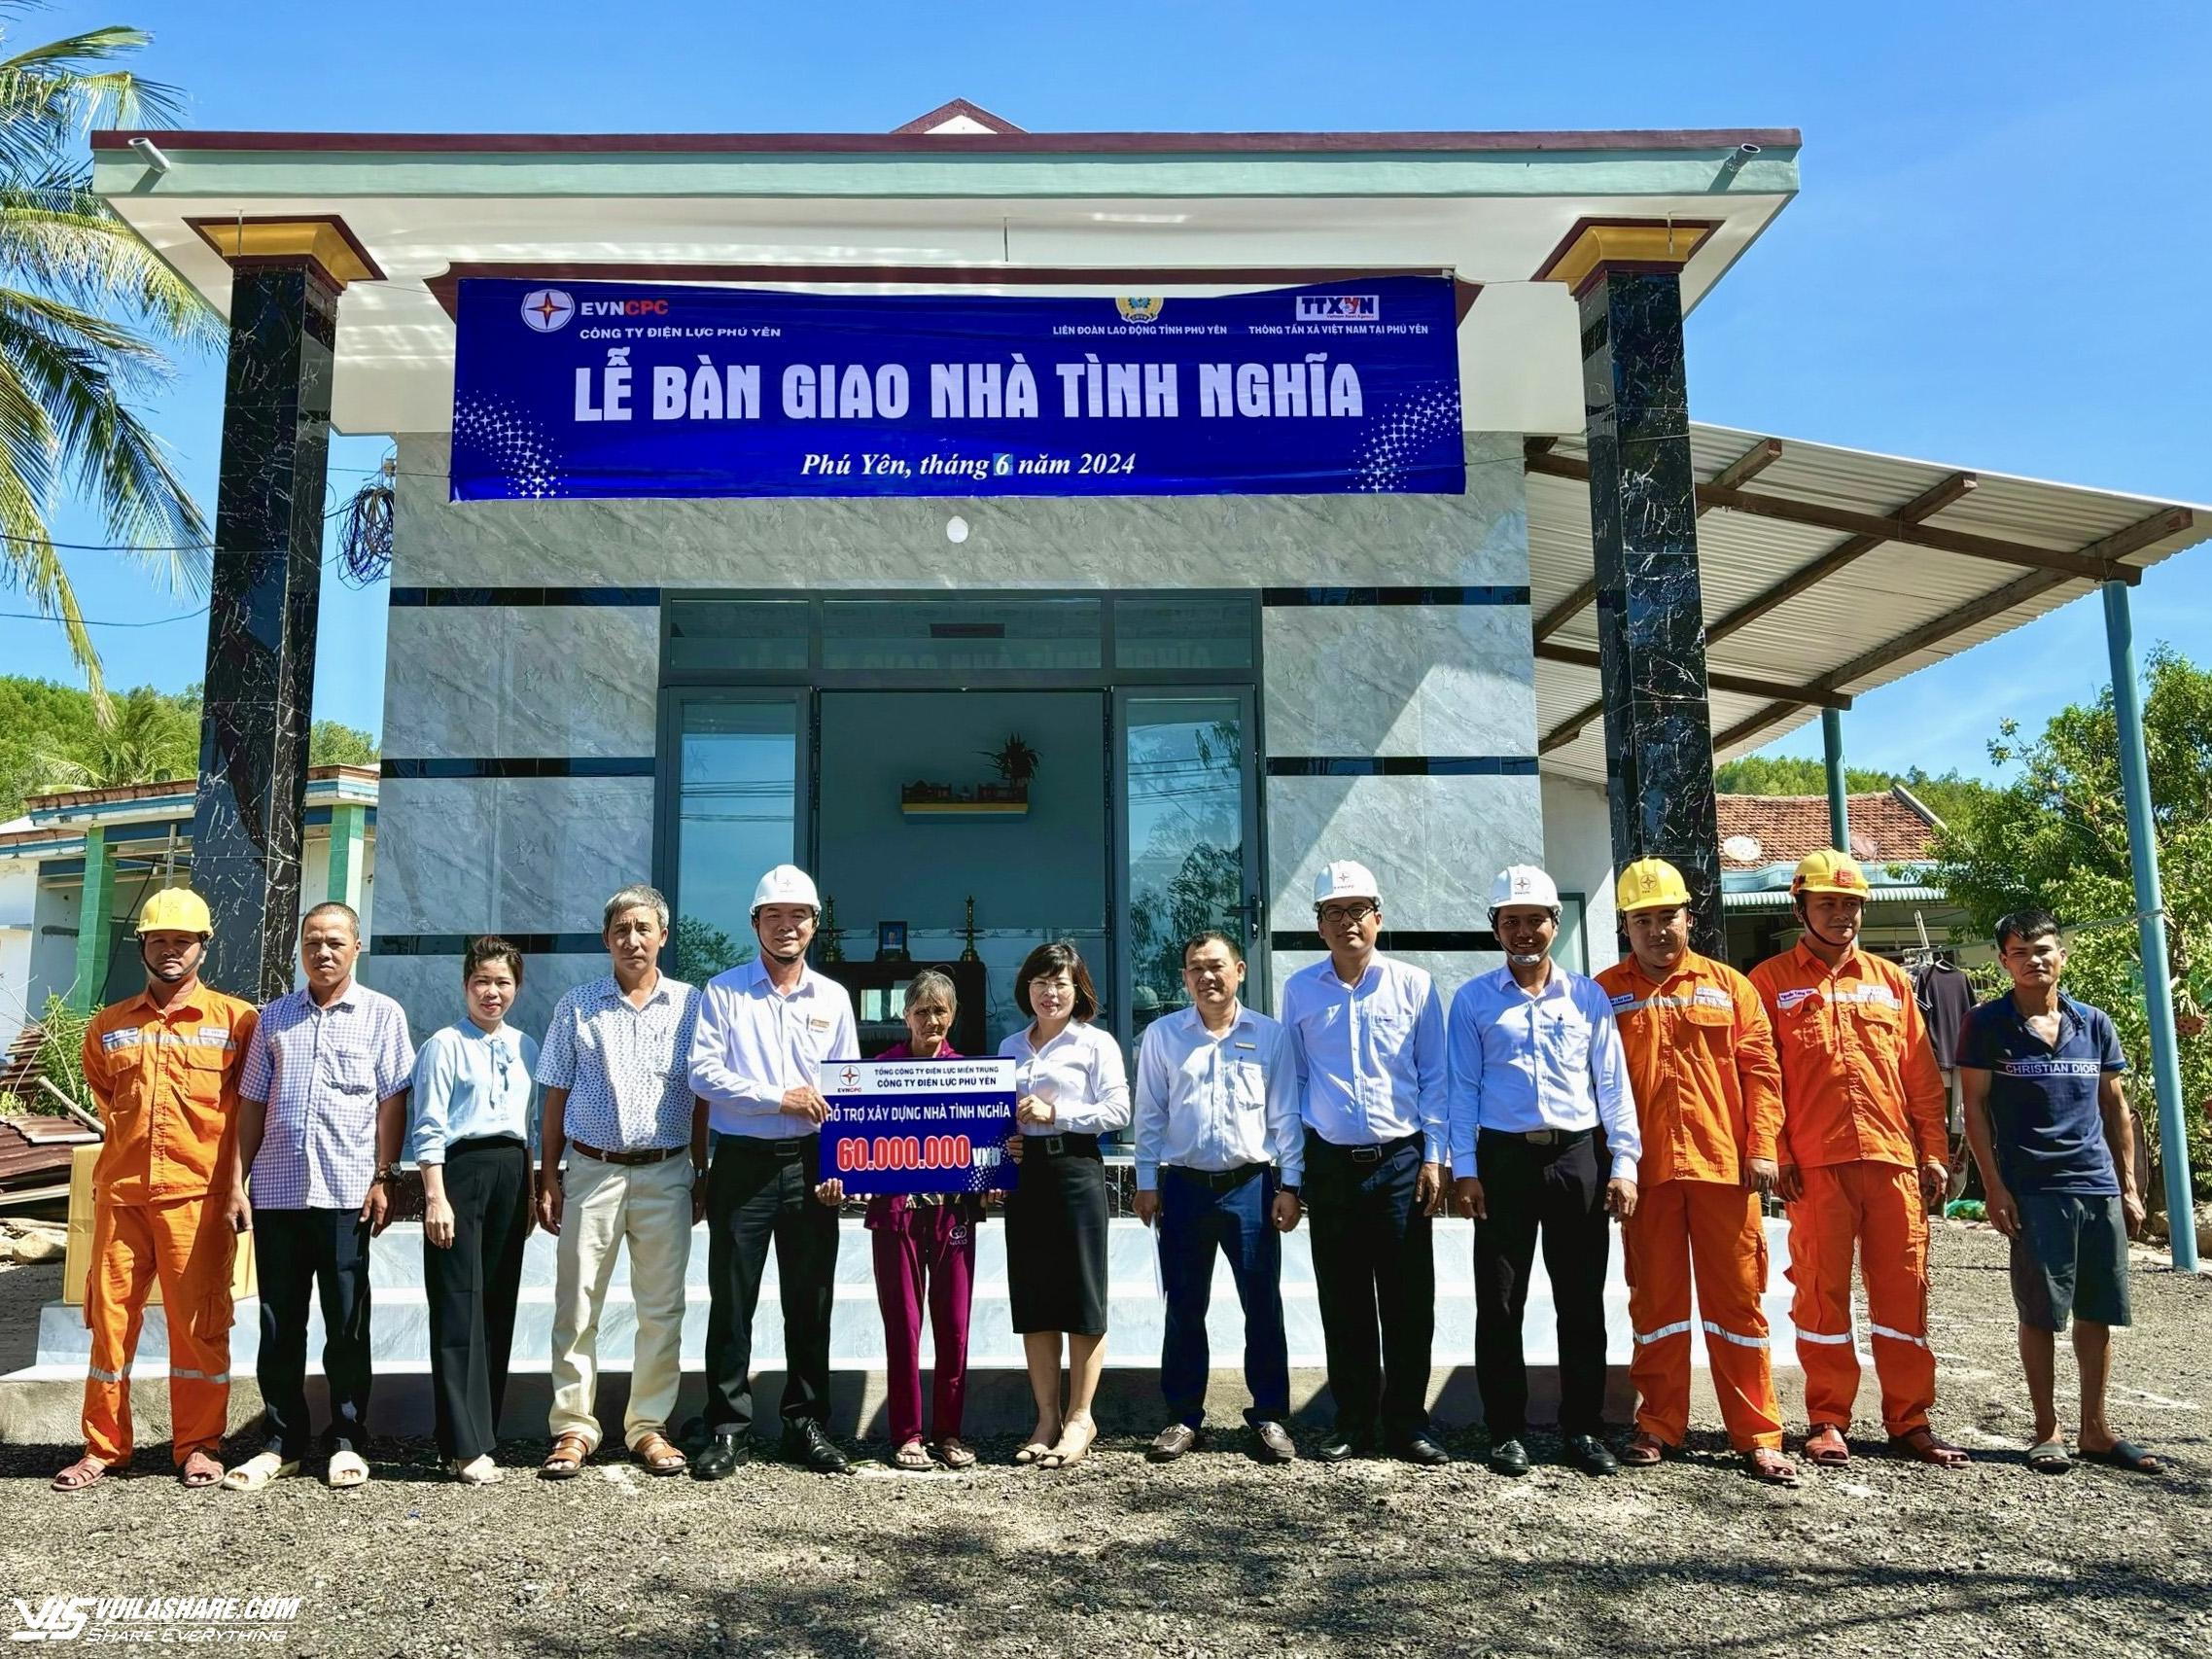 Điện lực Phú Yên hoàn thành chương trình xây nhà tình nghĩa năm 2024- Ảnh 1.